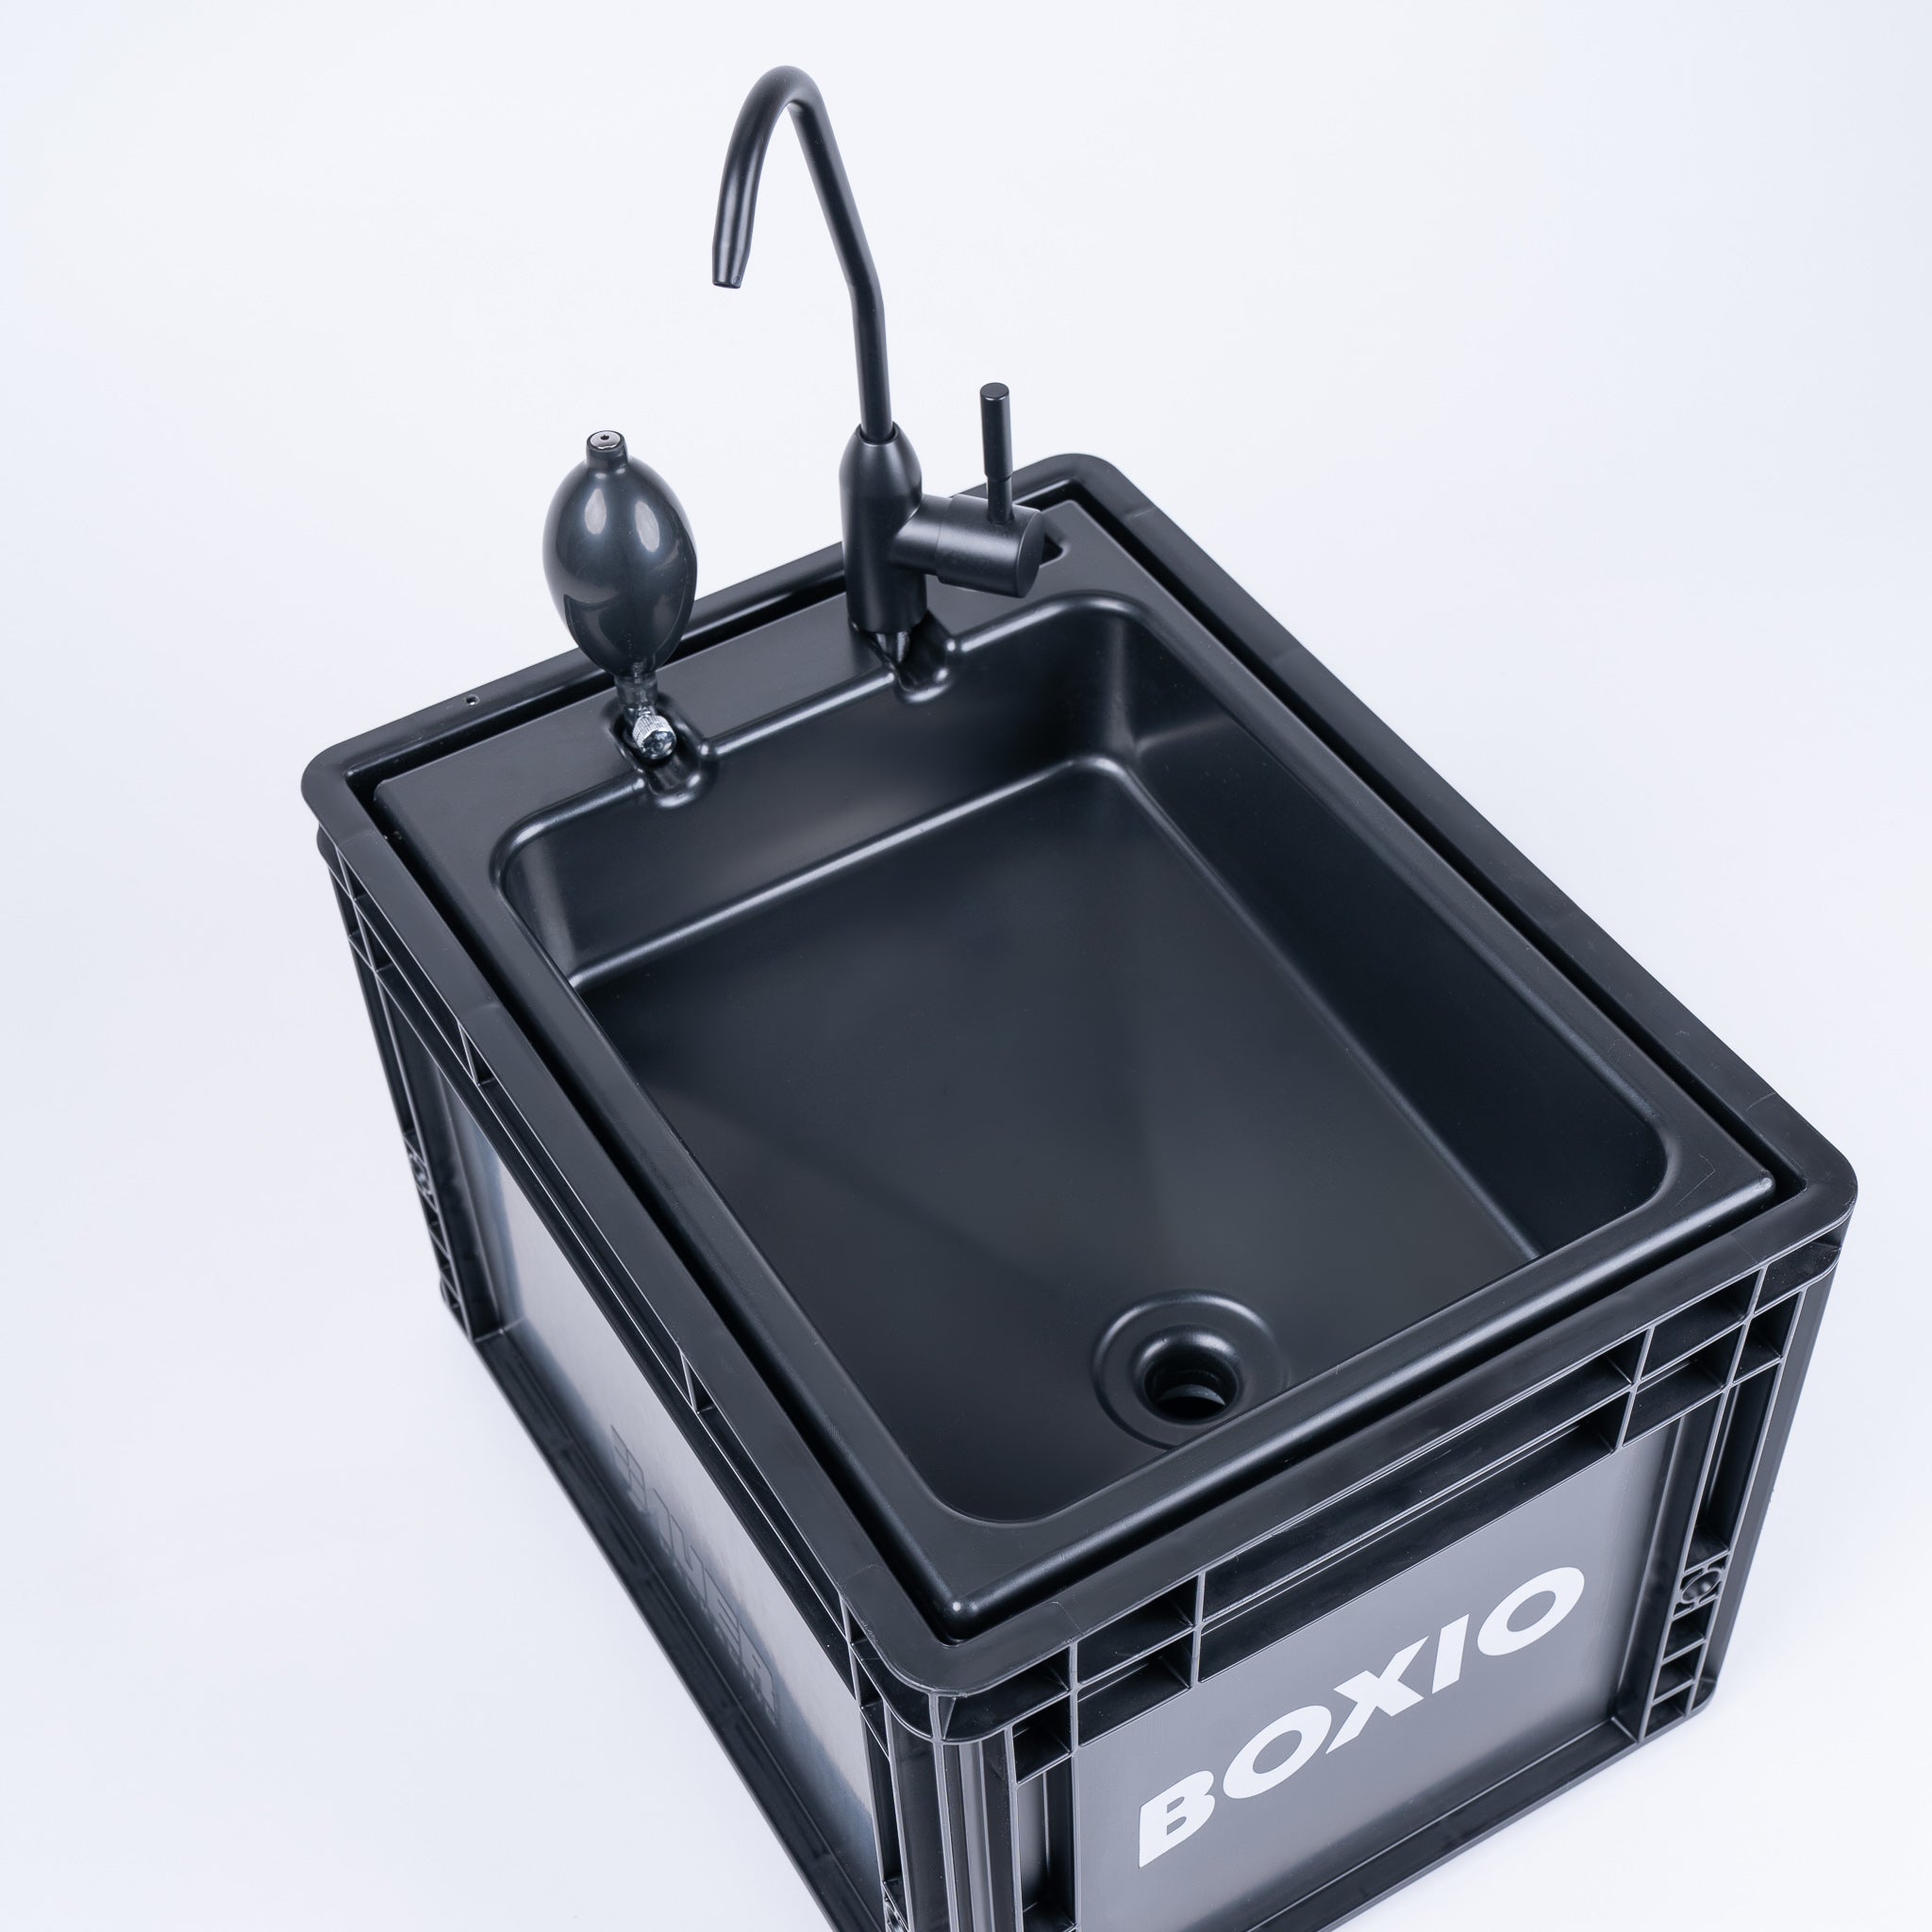 Eurobox BOXIO con taladros para BOXIO - TOILET